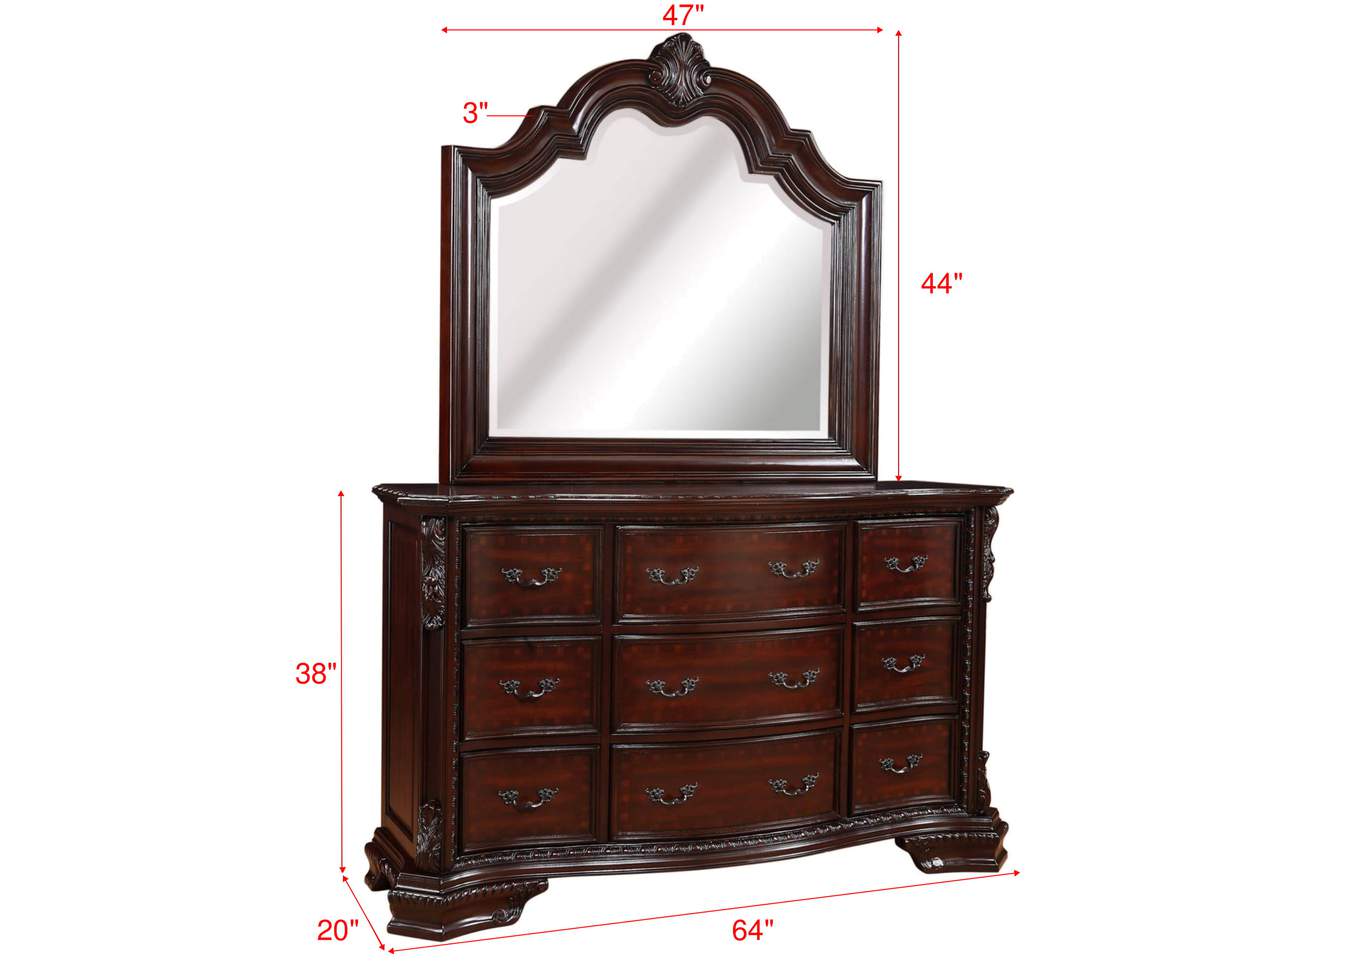 Sheffield King Bed W/ Dresser, Mirror, Nightstand, Chest,Crown Mark